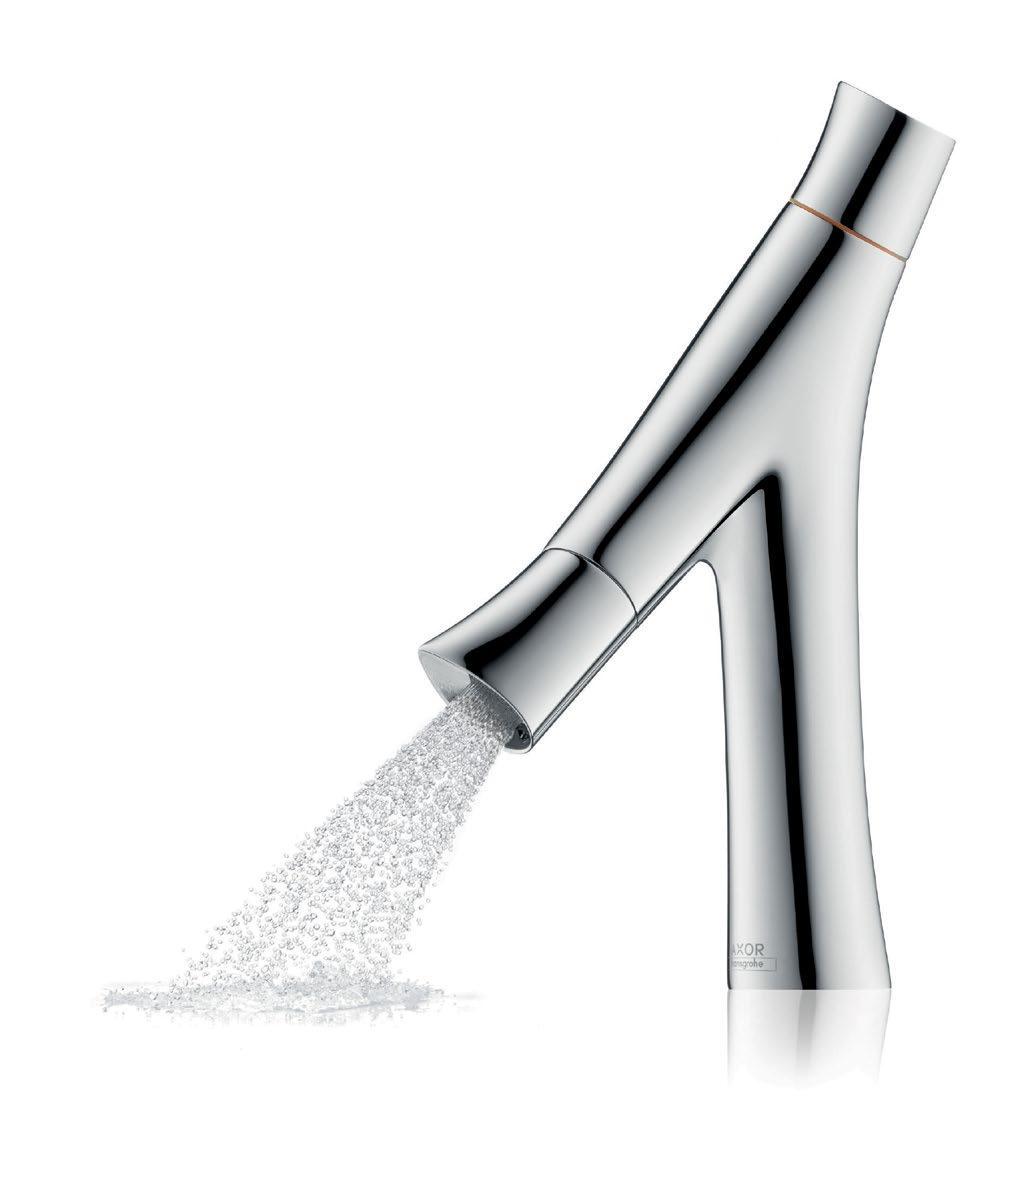 60 61 İnovatif armatür duş akışı daha az su kullanılırken suyun